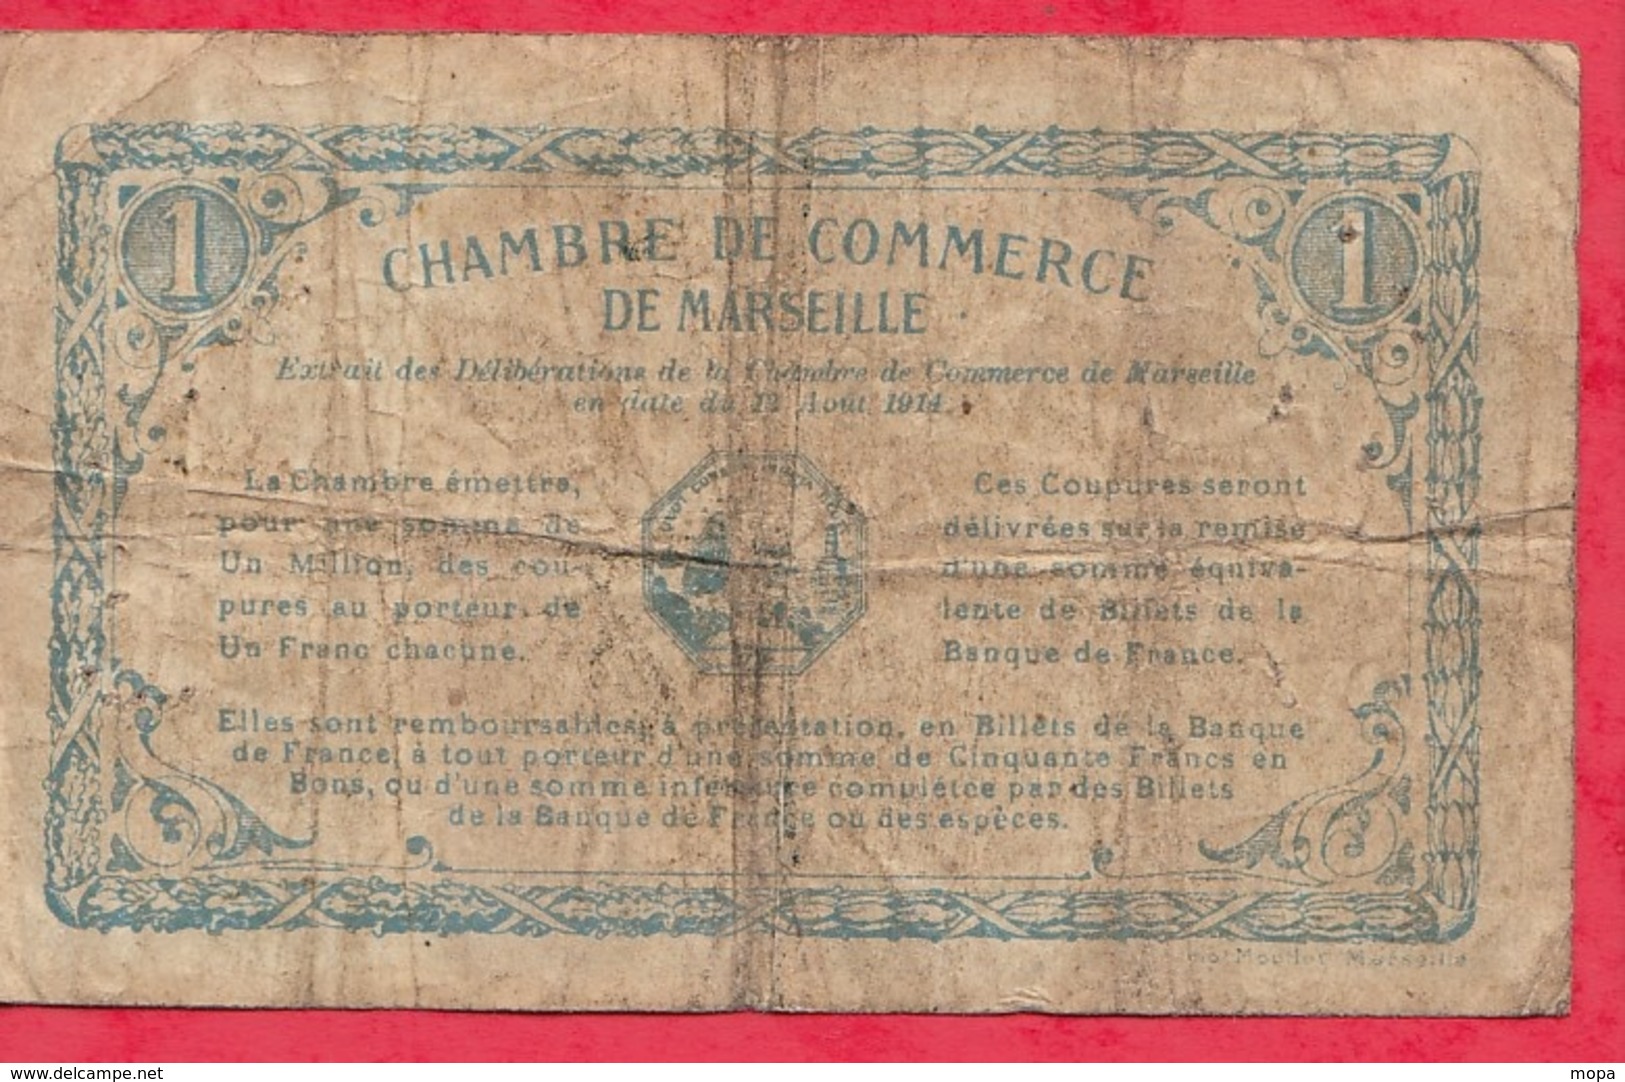 1 Franc Chambre De Commerce De Marseille Dans L 'état (152 Bis) - Chambre De Commerce